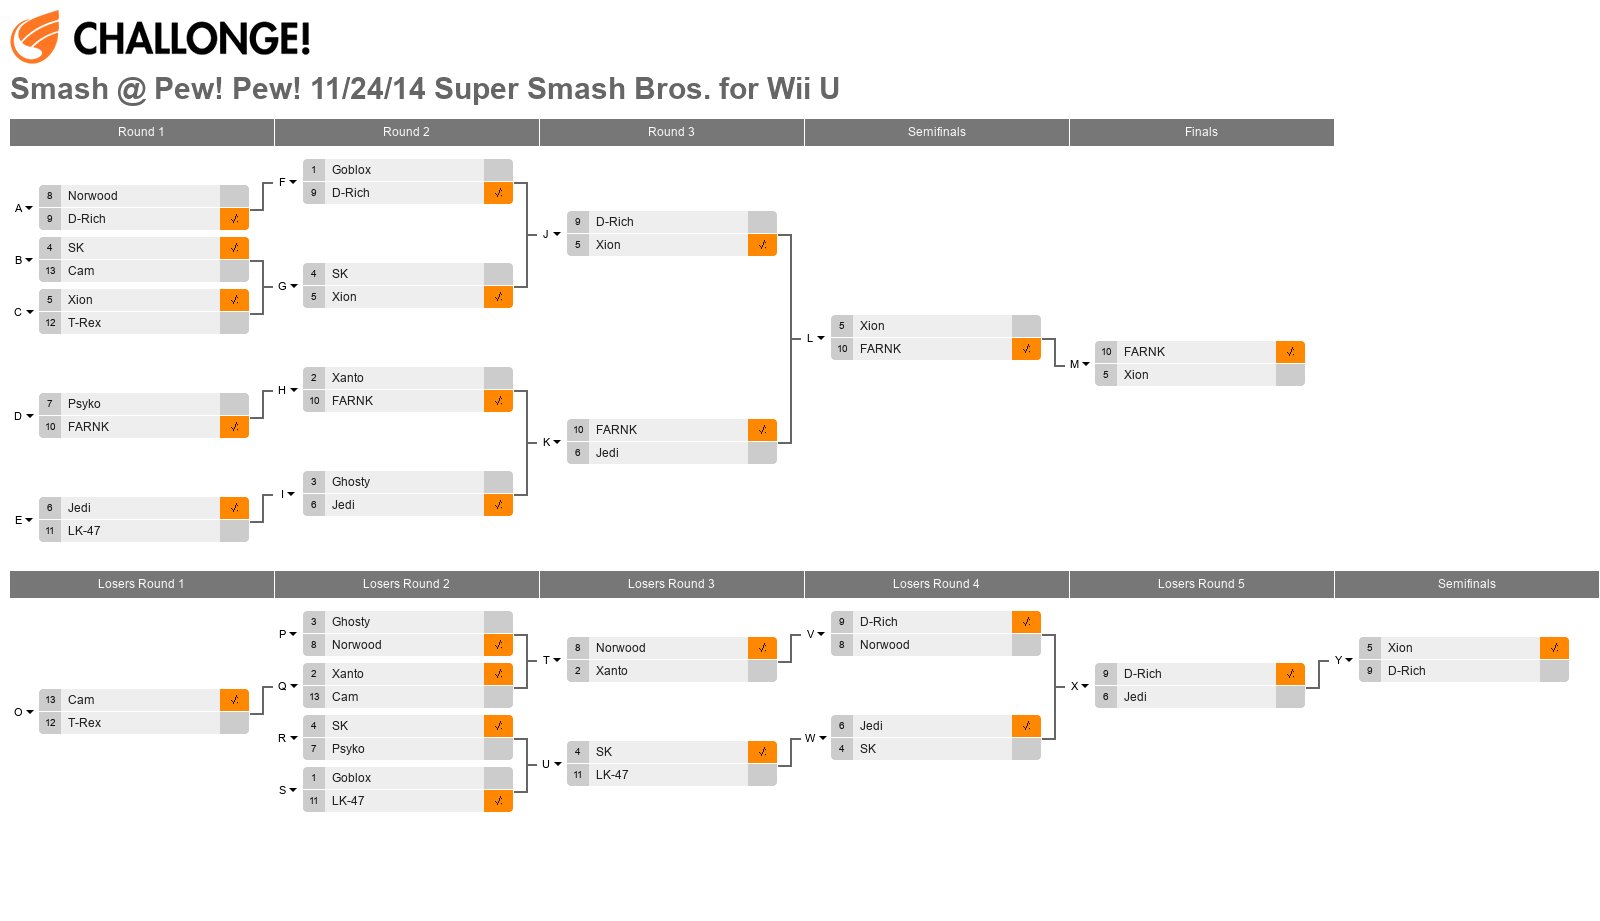 Smash @ Pew! Pew! 11/24/14 Super Smash Bros. for Wii U